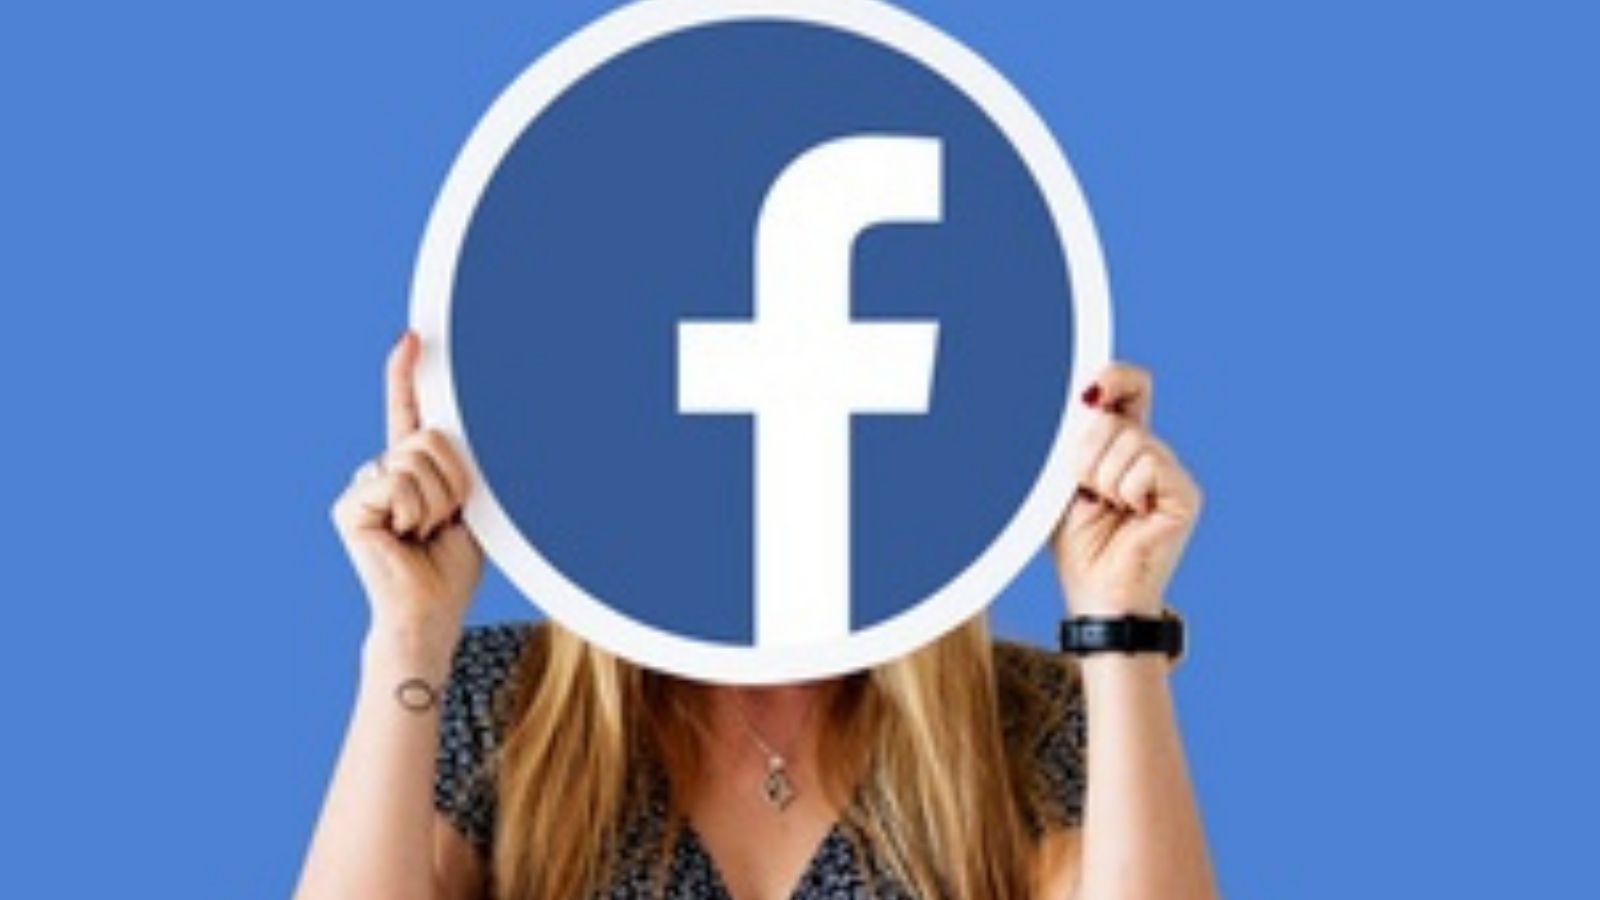 FB намерен инвестировать 1 миллиард долларов в расширение прав и возможностей авторов